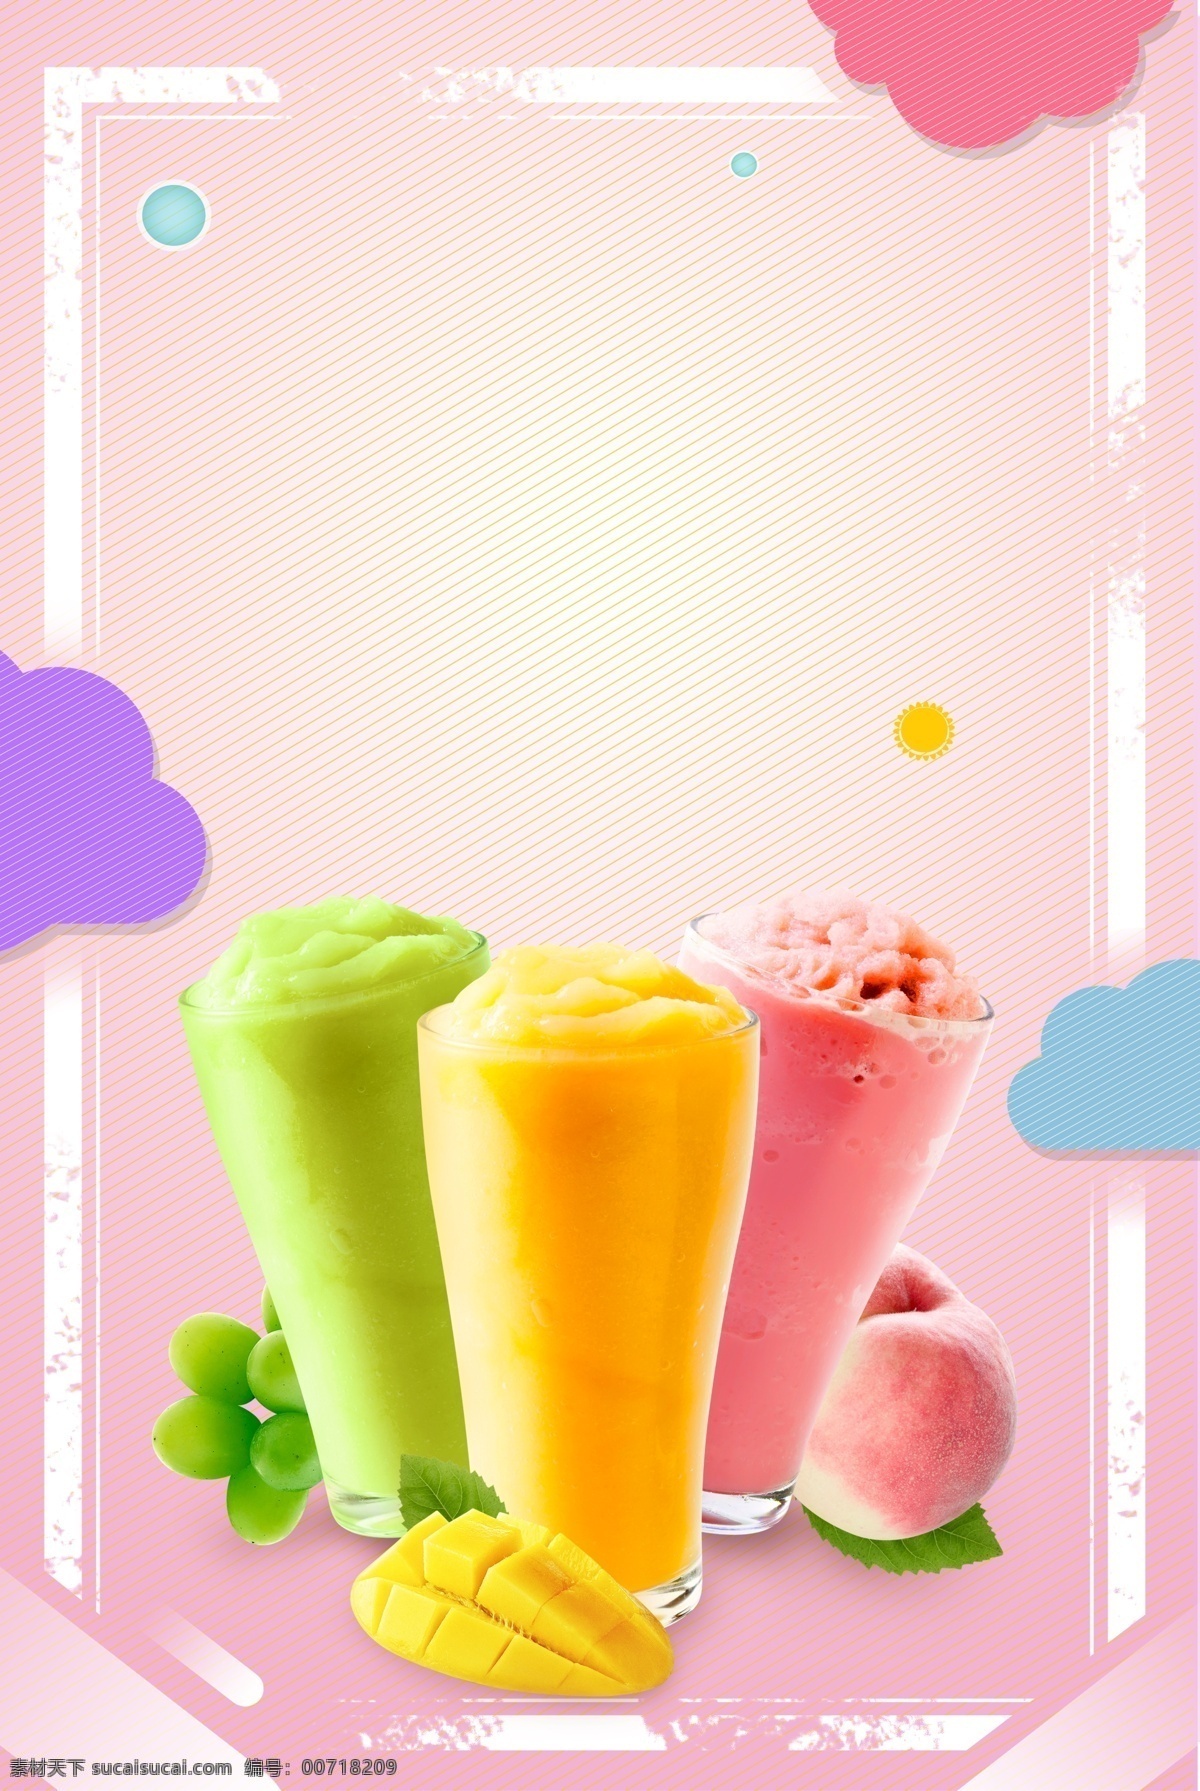 夏日简约水果 冰淇淋海报 简约 夏日 水果 冰淇淋 冰激凌 促销 宣传 海报 广告 背景